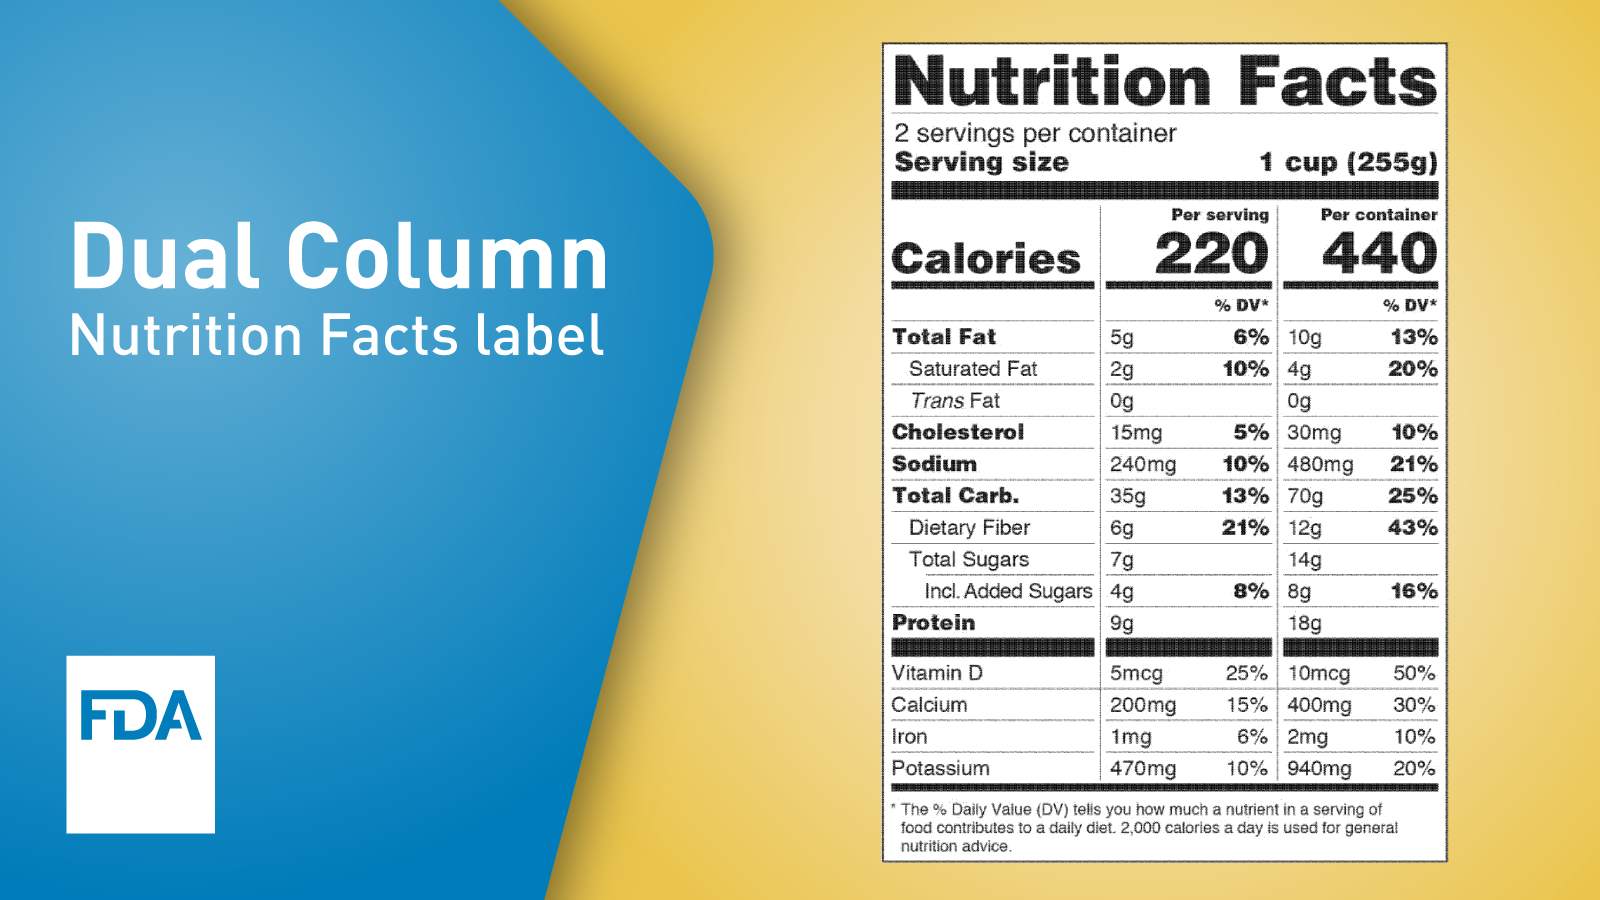 FDAs Dual Column Nutrition Facts Label